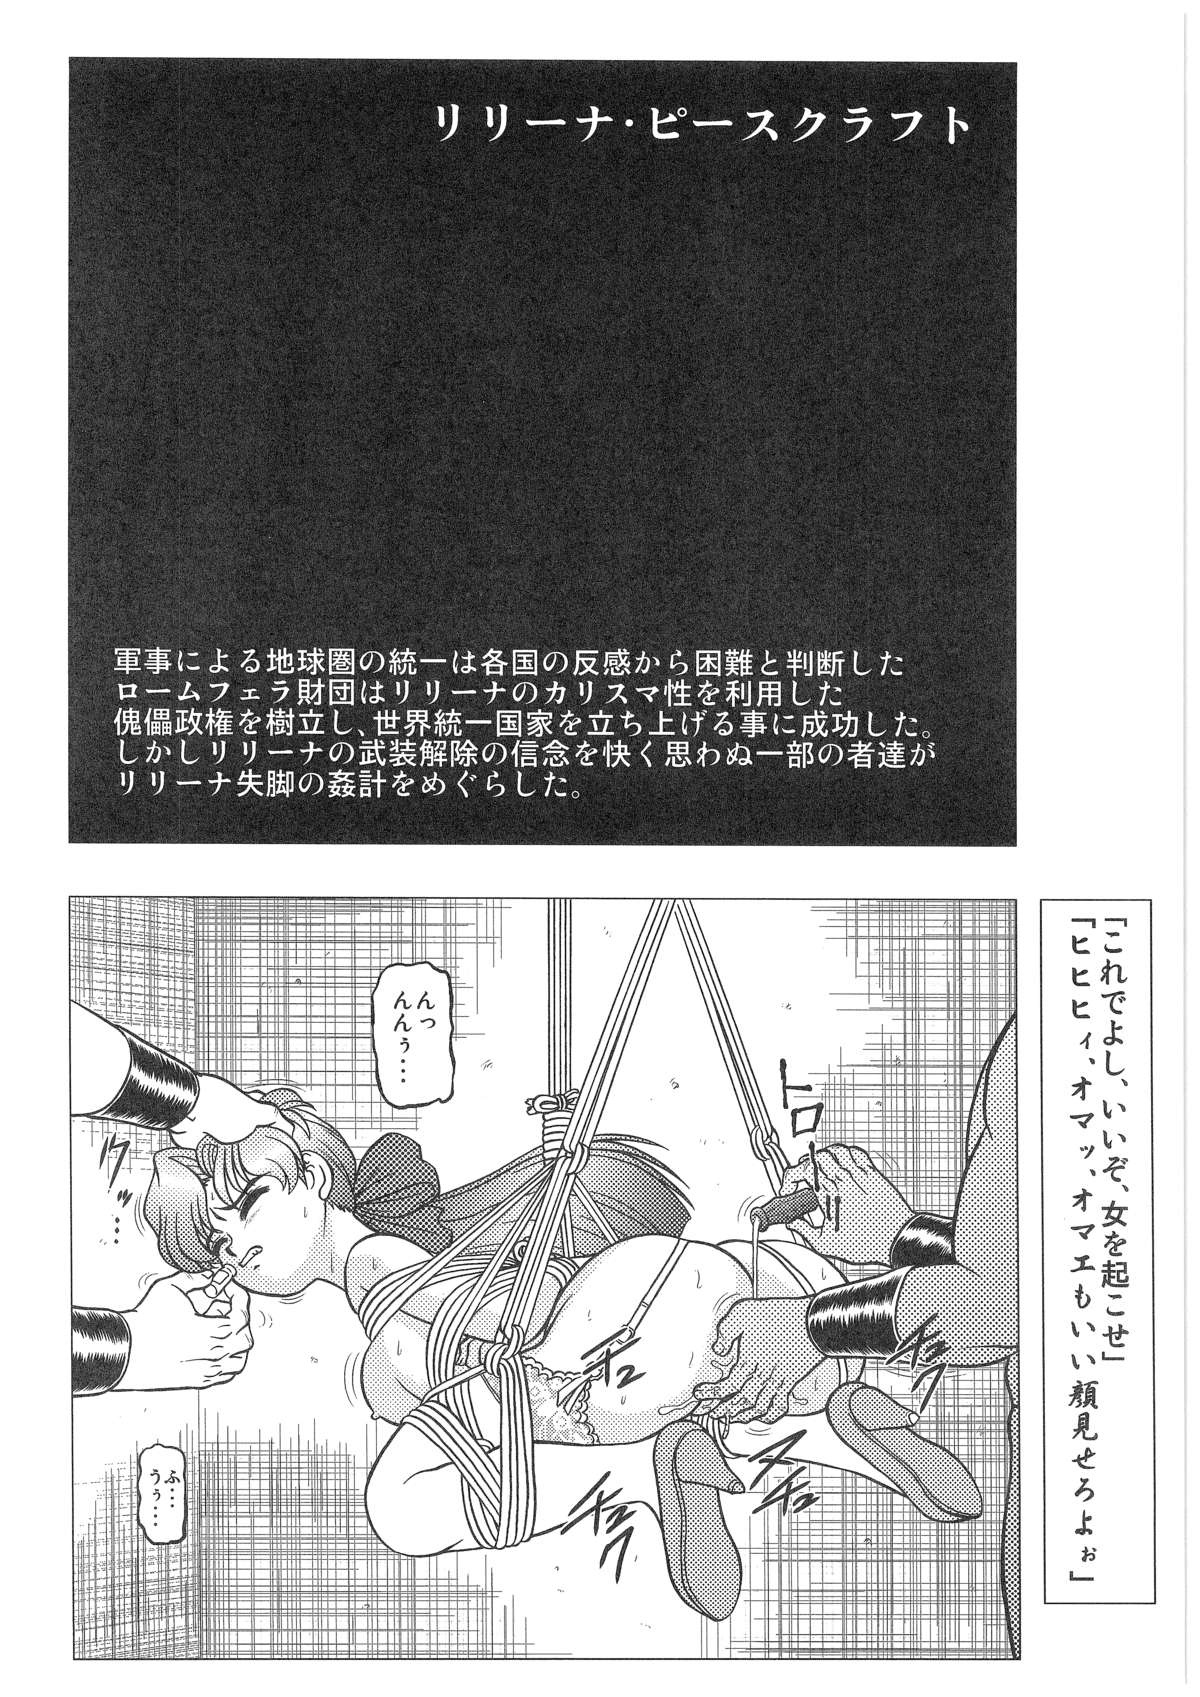 [Dakimakuma, Jingai Makyou Club (WING☆BIRD)] CHARA EMU W☆B010 GONDAM 008 ZZ-W-F91 (Various) page 5 full